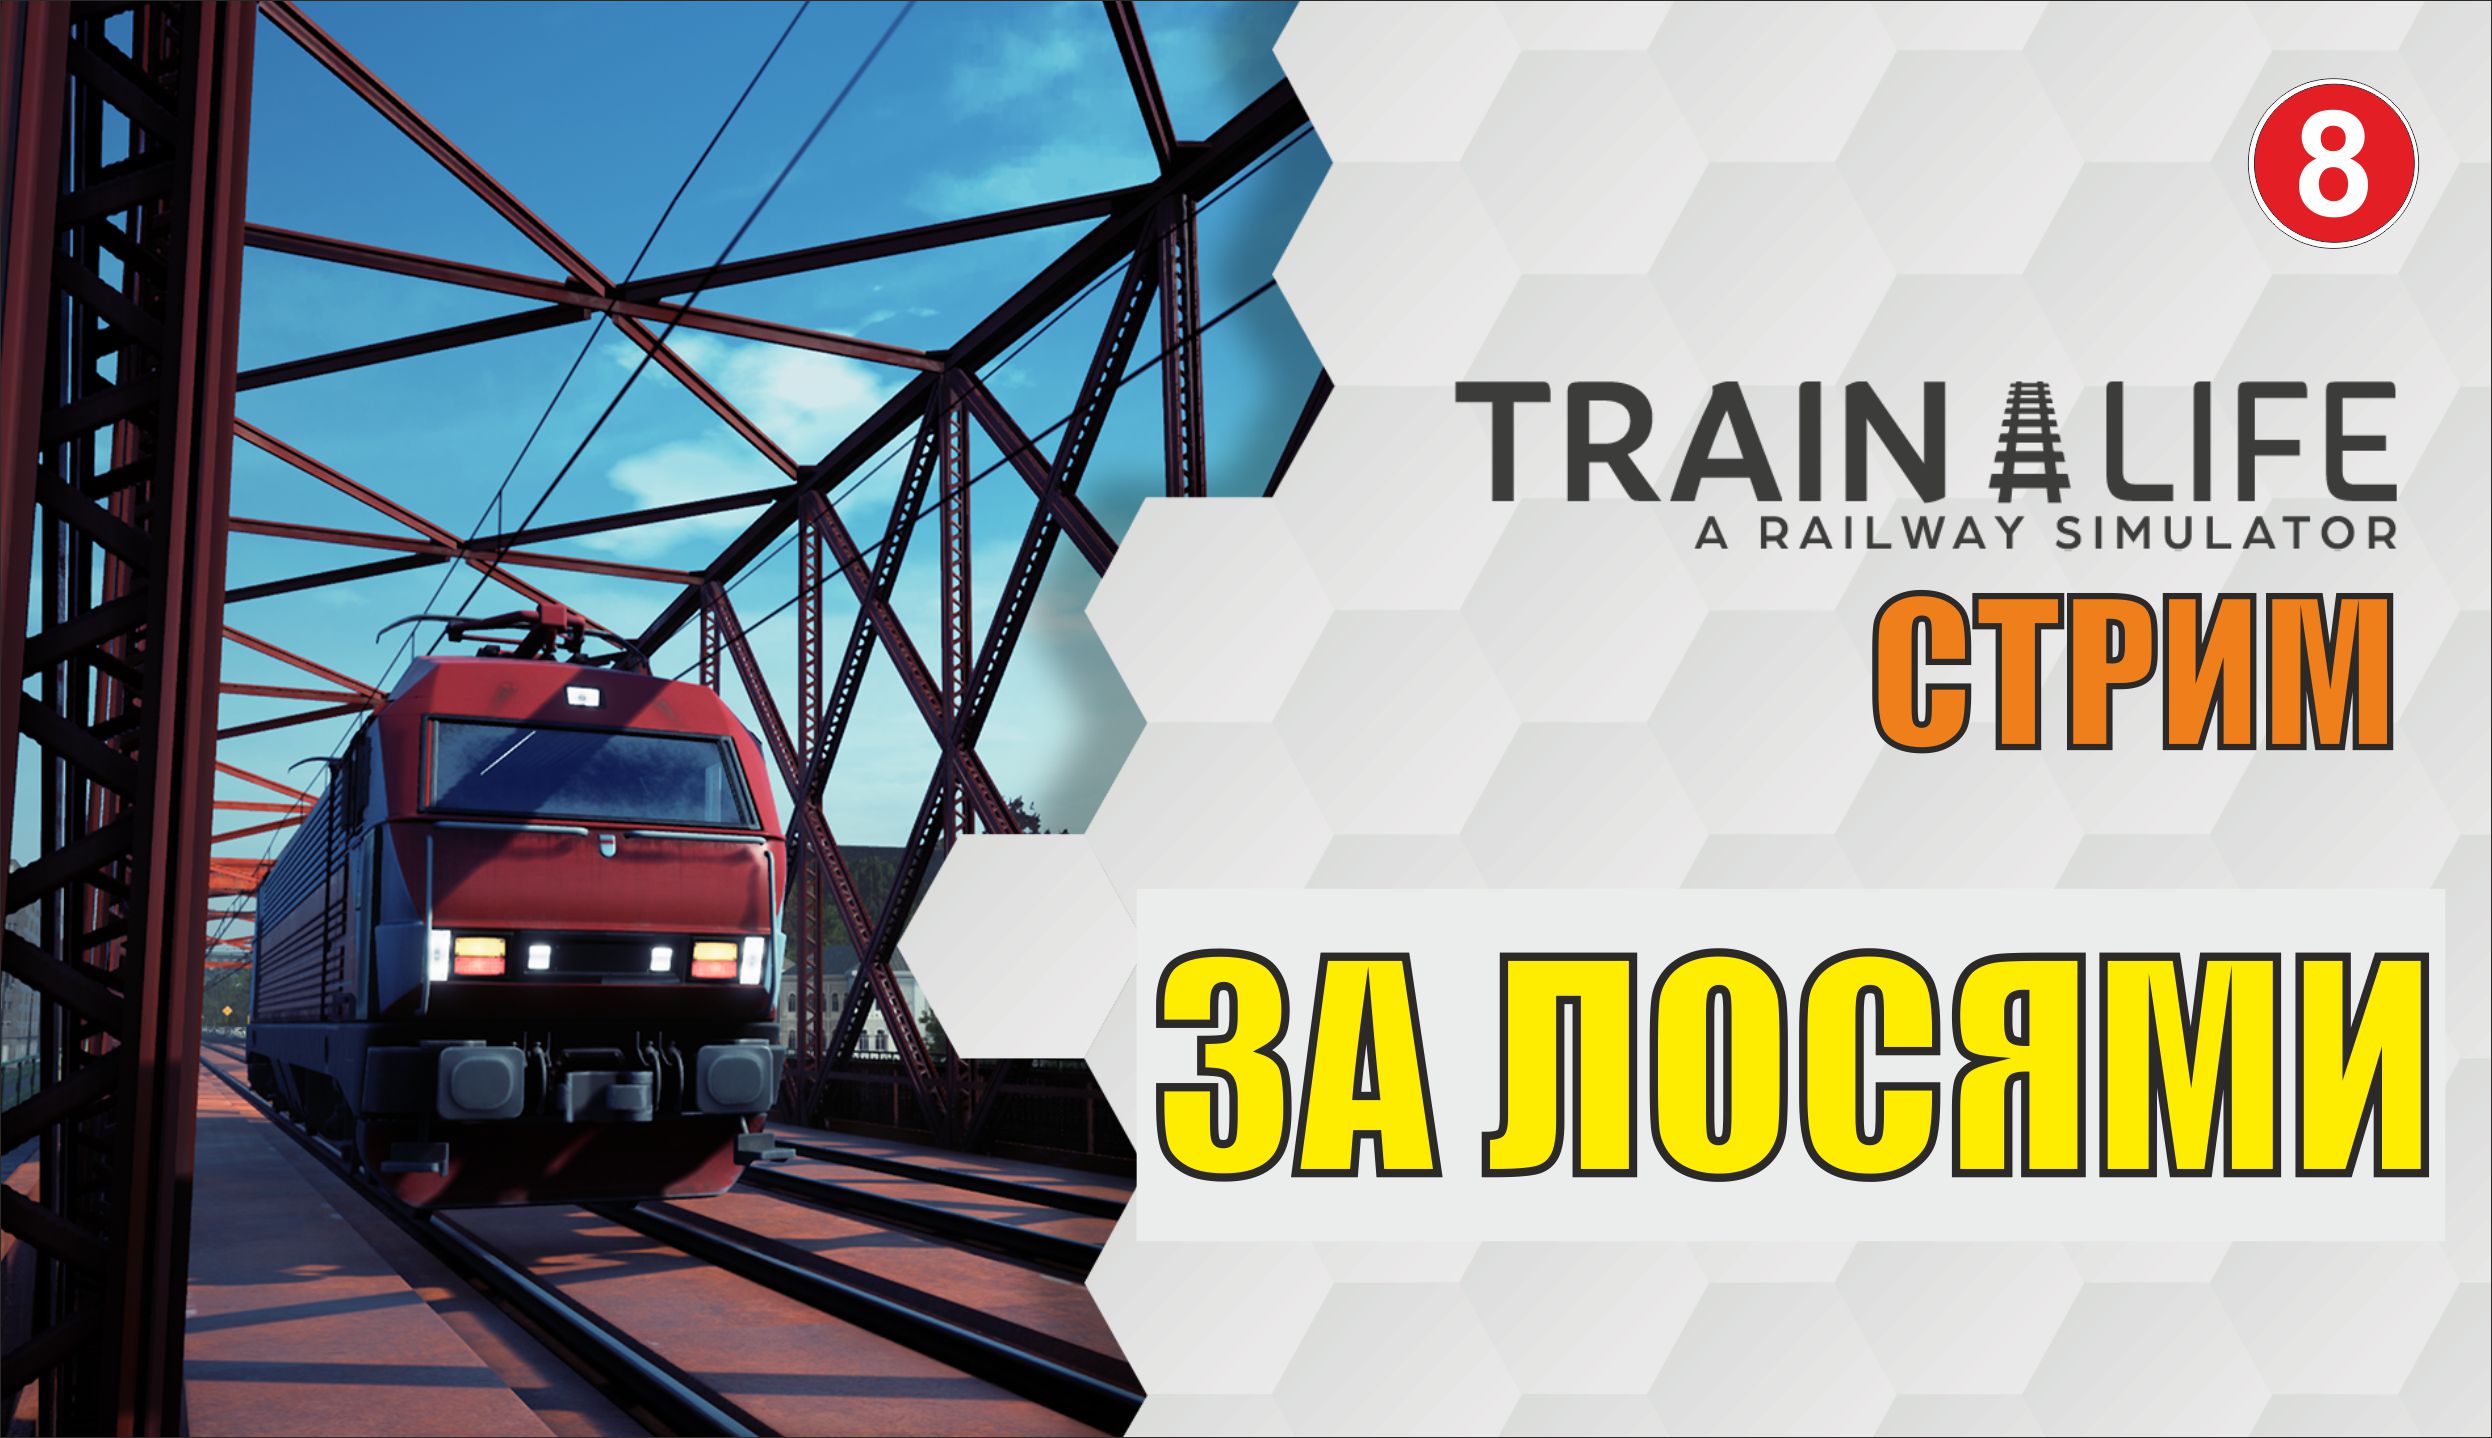 Train Life: A Railway Simulator -  За лосями